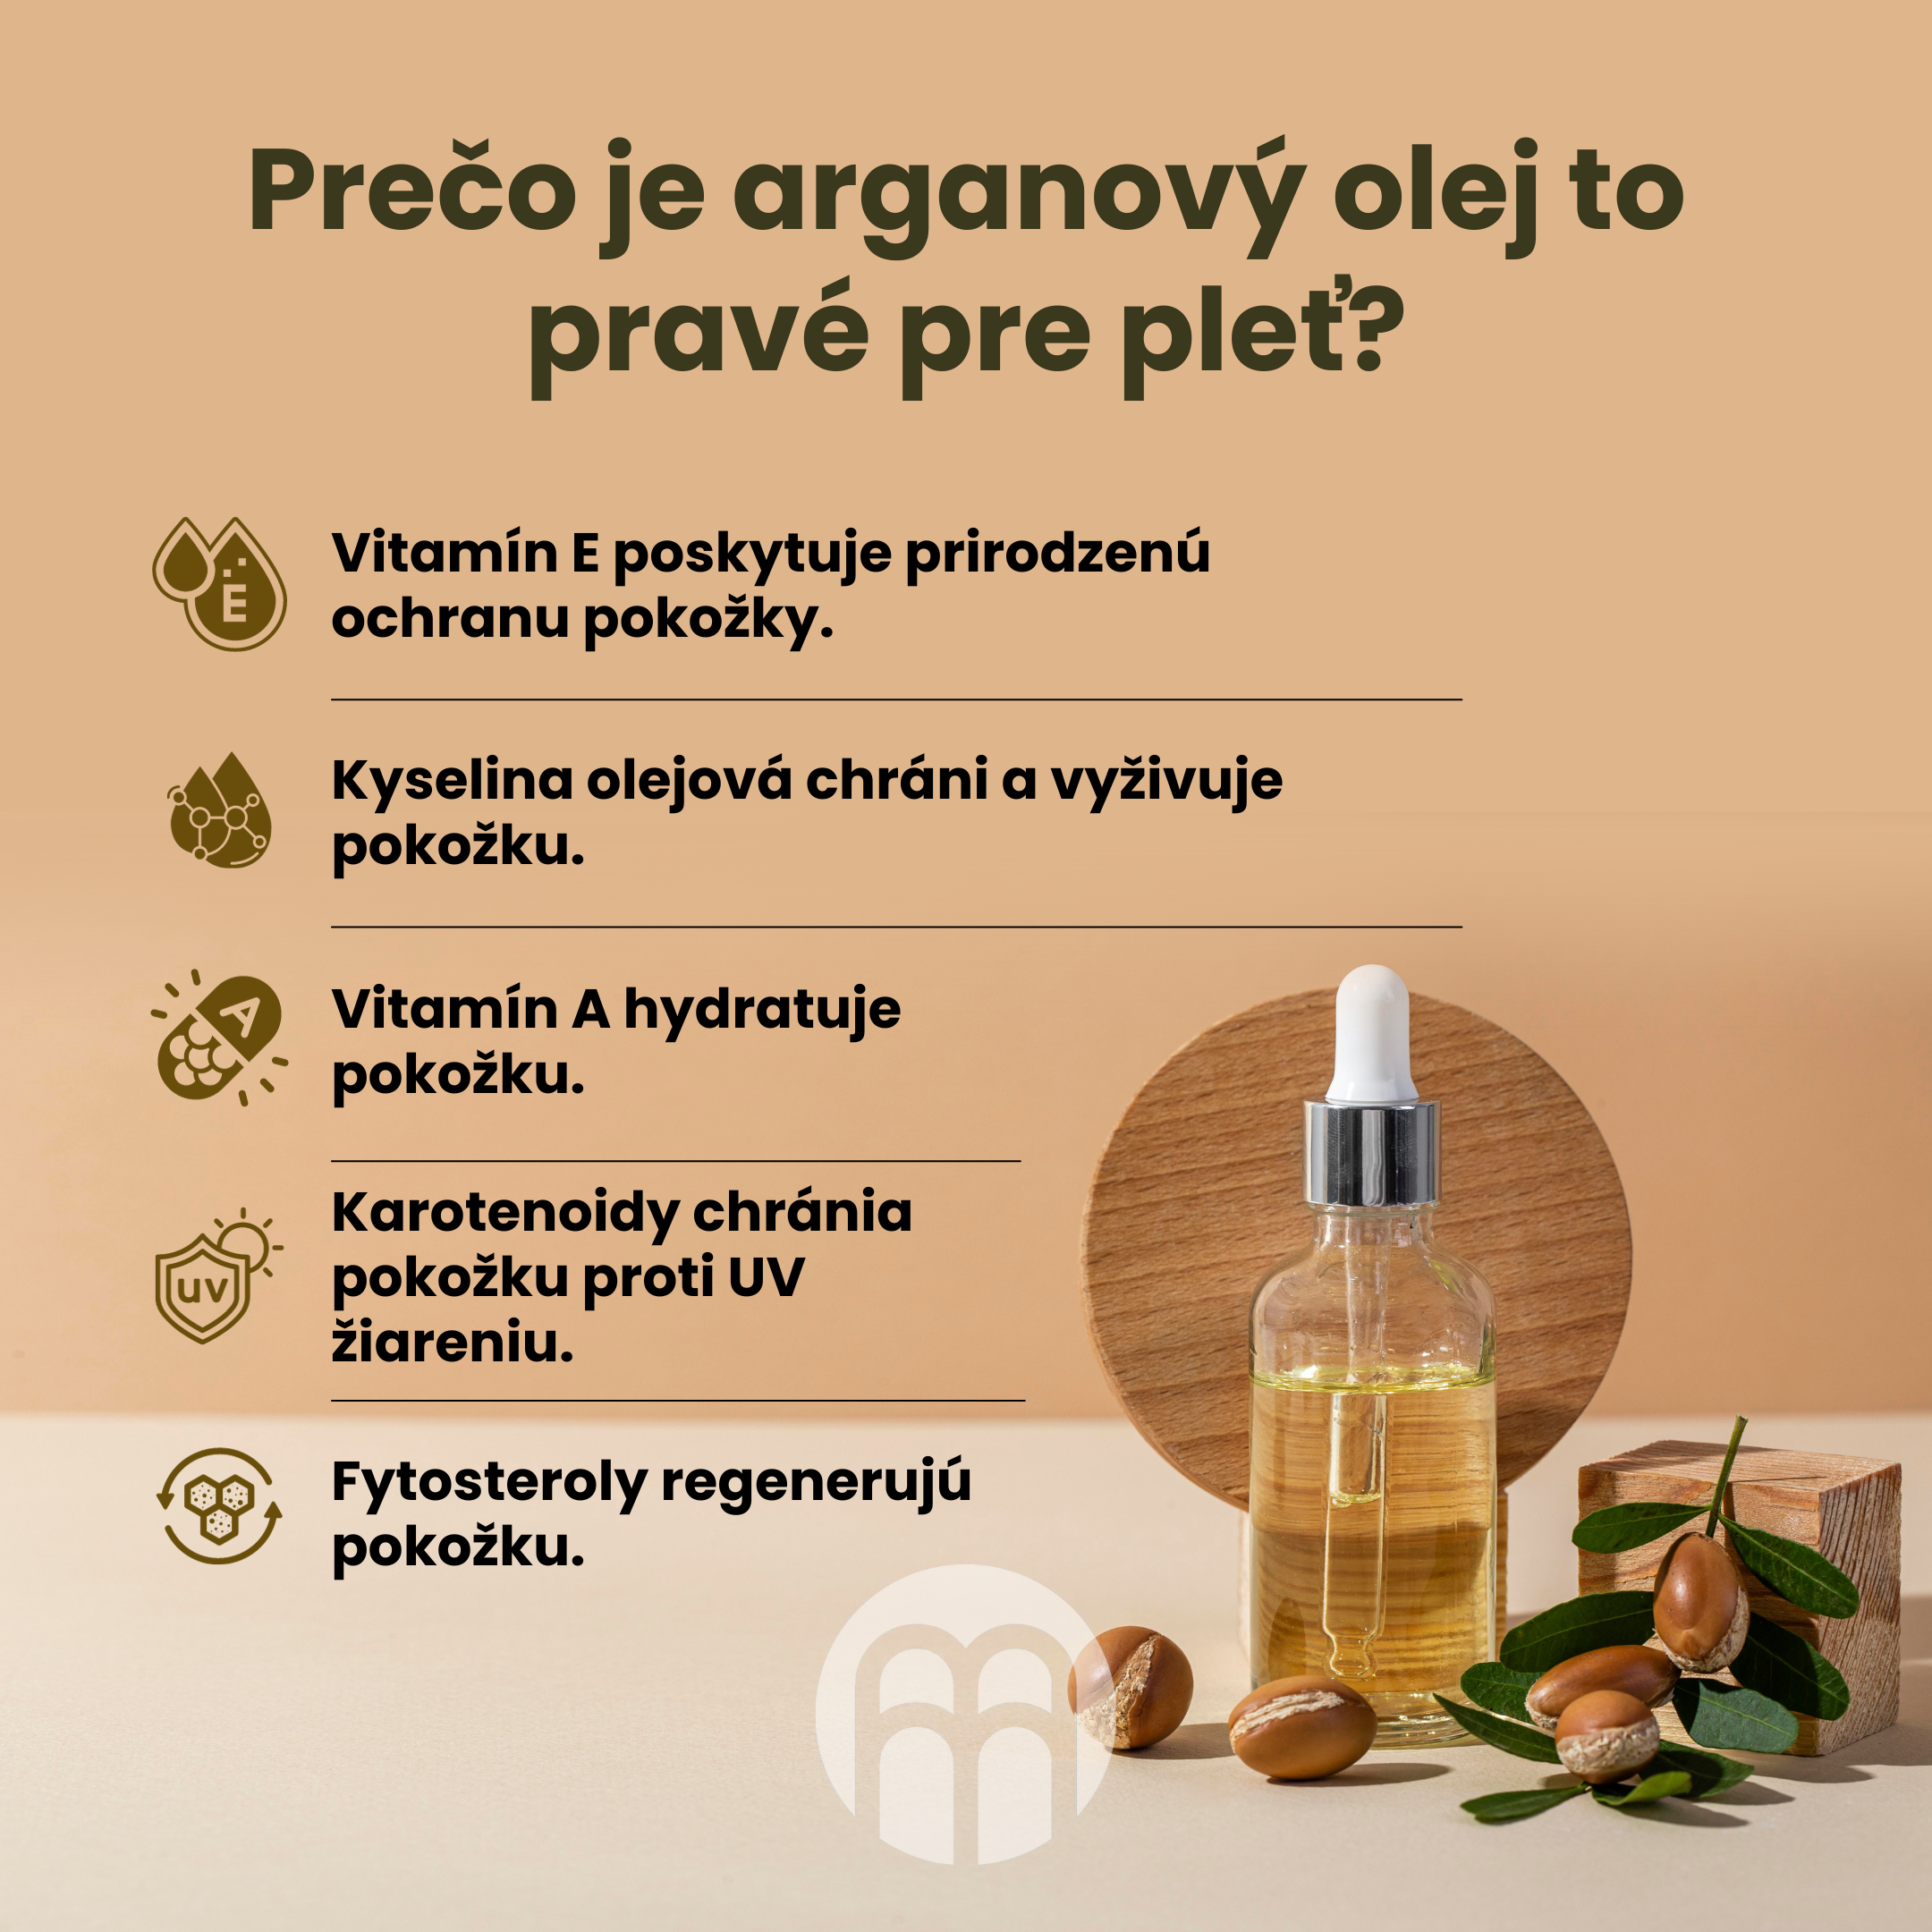 Prečo je arganový olej vhodný pre pleť